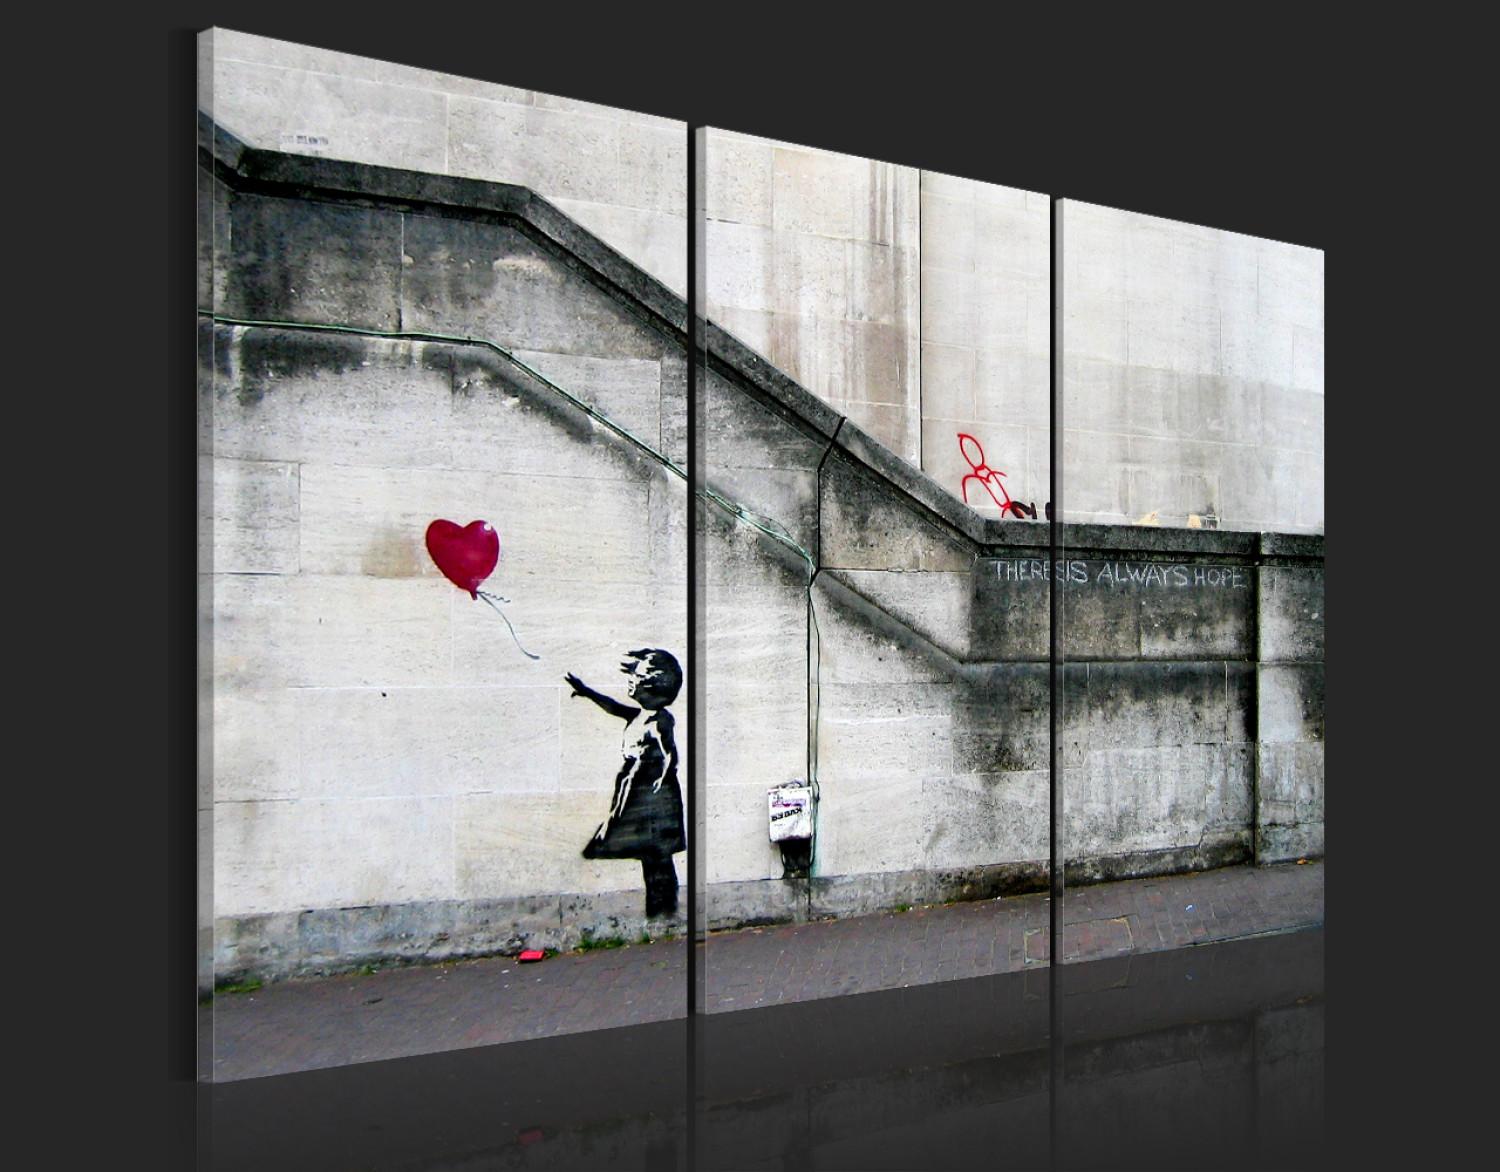 Impresión en el vidrio acrílico Girl With a Balloon by Banksy [Glass]